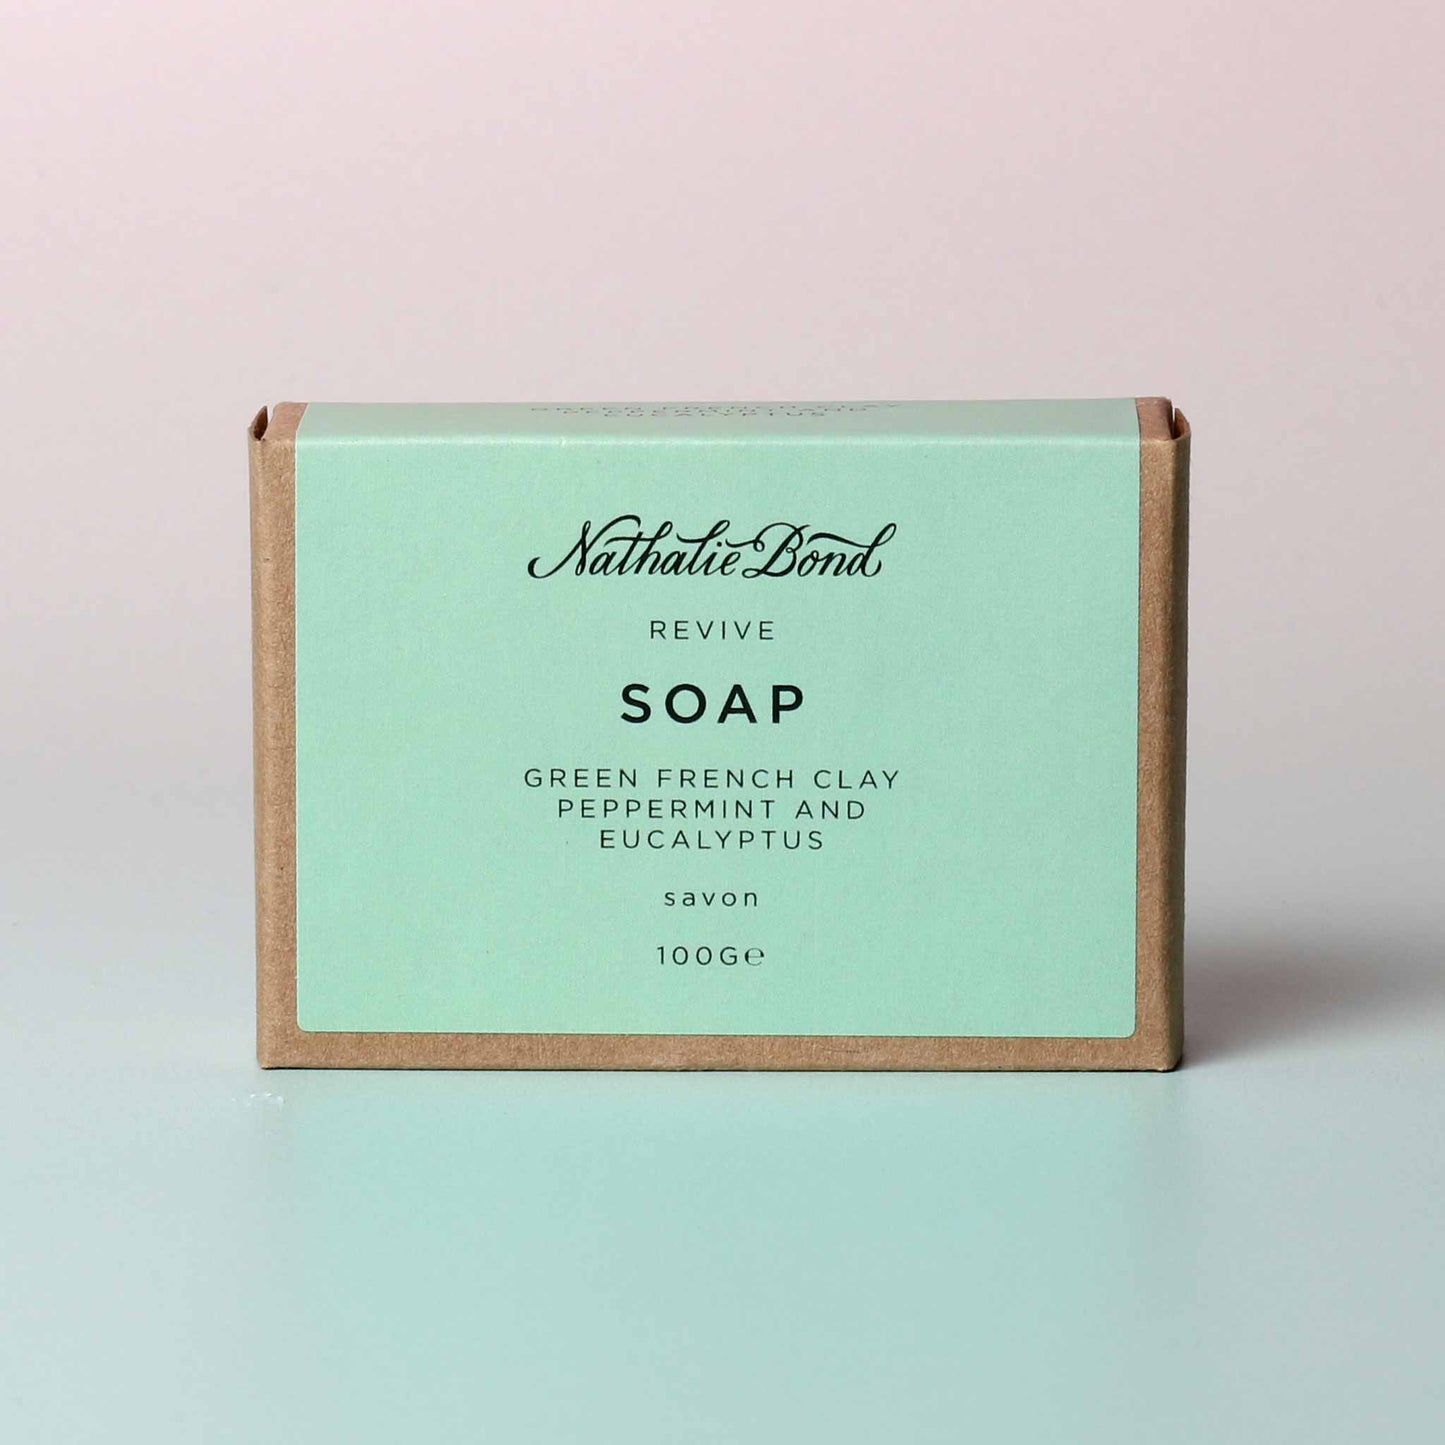 Nathalie Bond - Revive Soap Bar